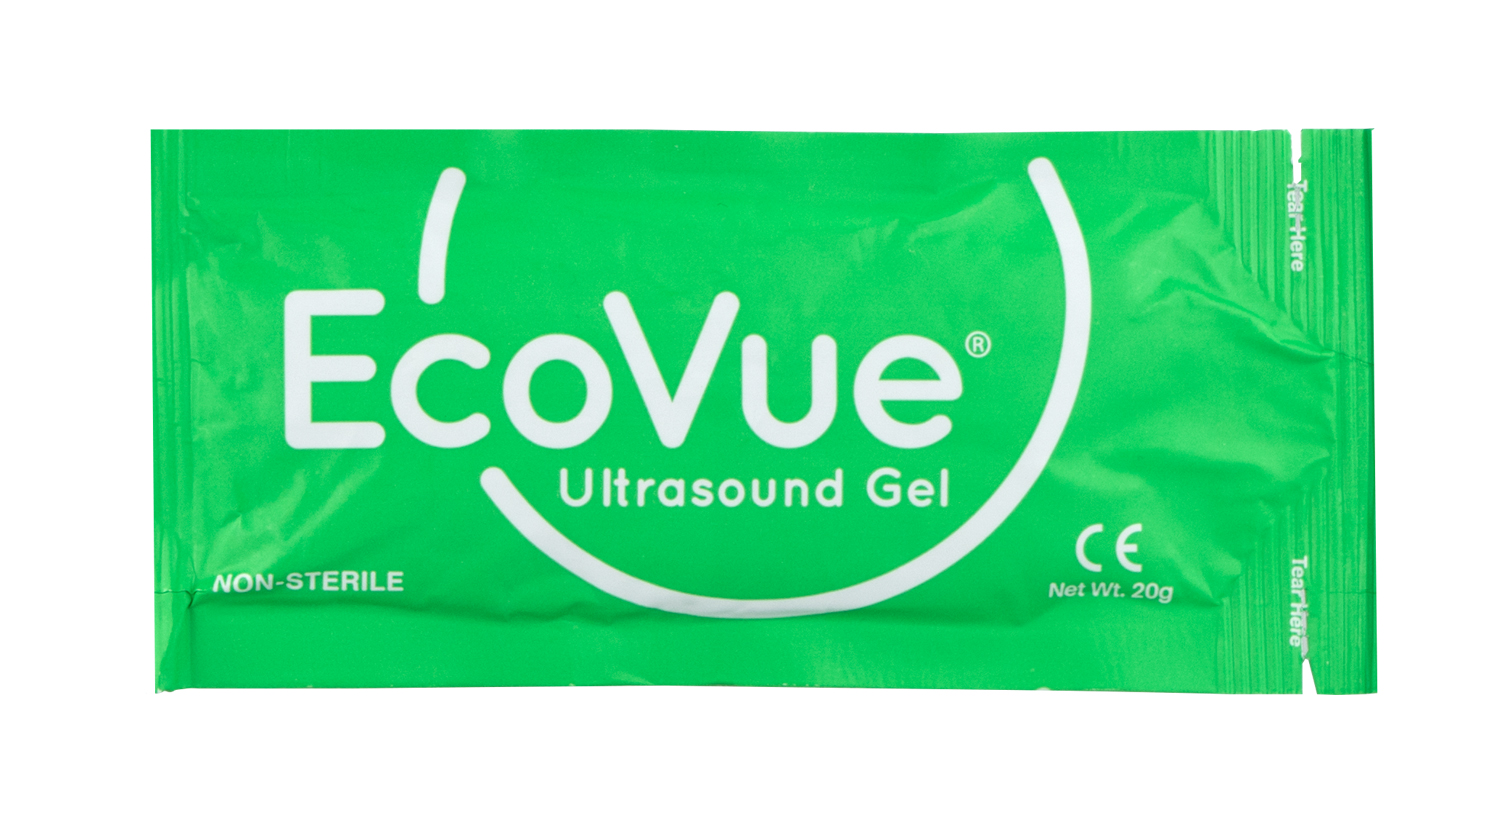 EcoVue-281-20g-Non-Sterile-Packet.jpg